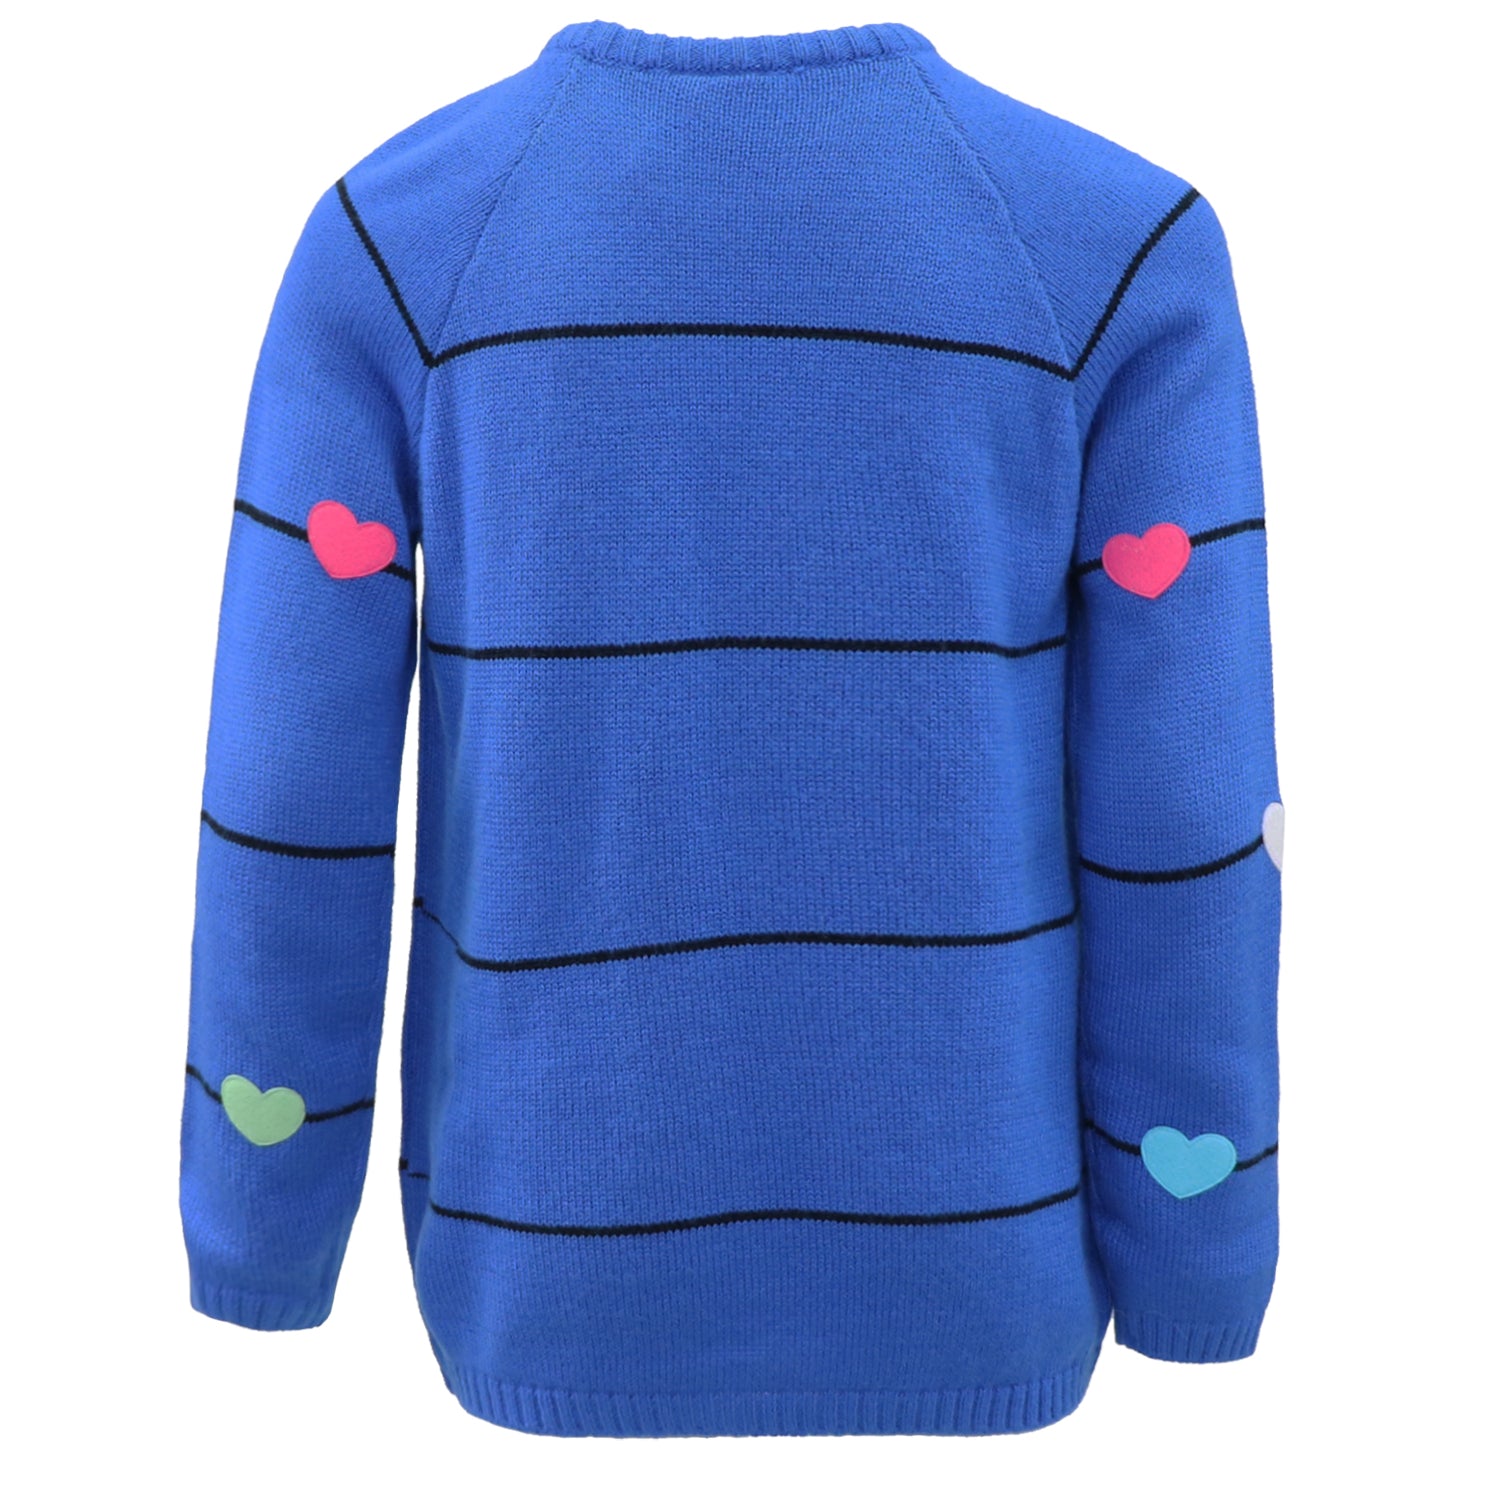 Cyndeelee Girls 2-16 Stripe Multicolored Felt Heart Sweater